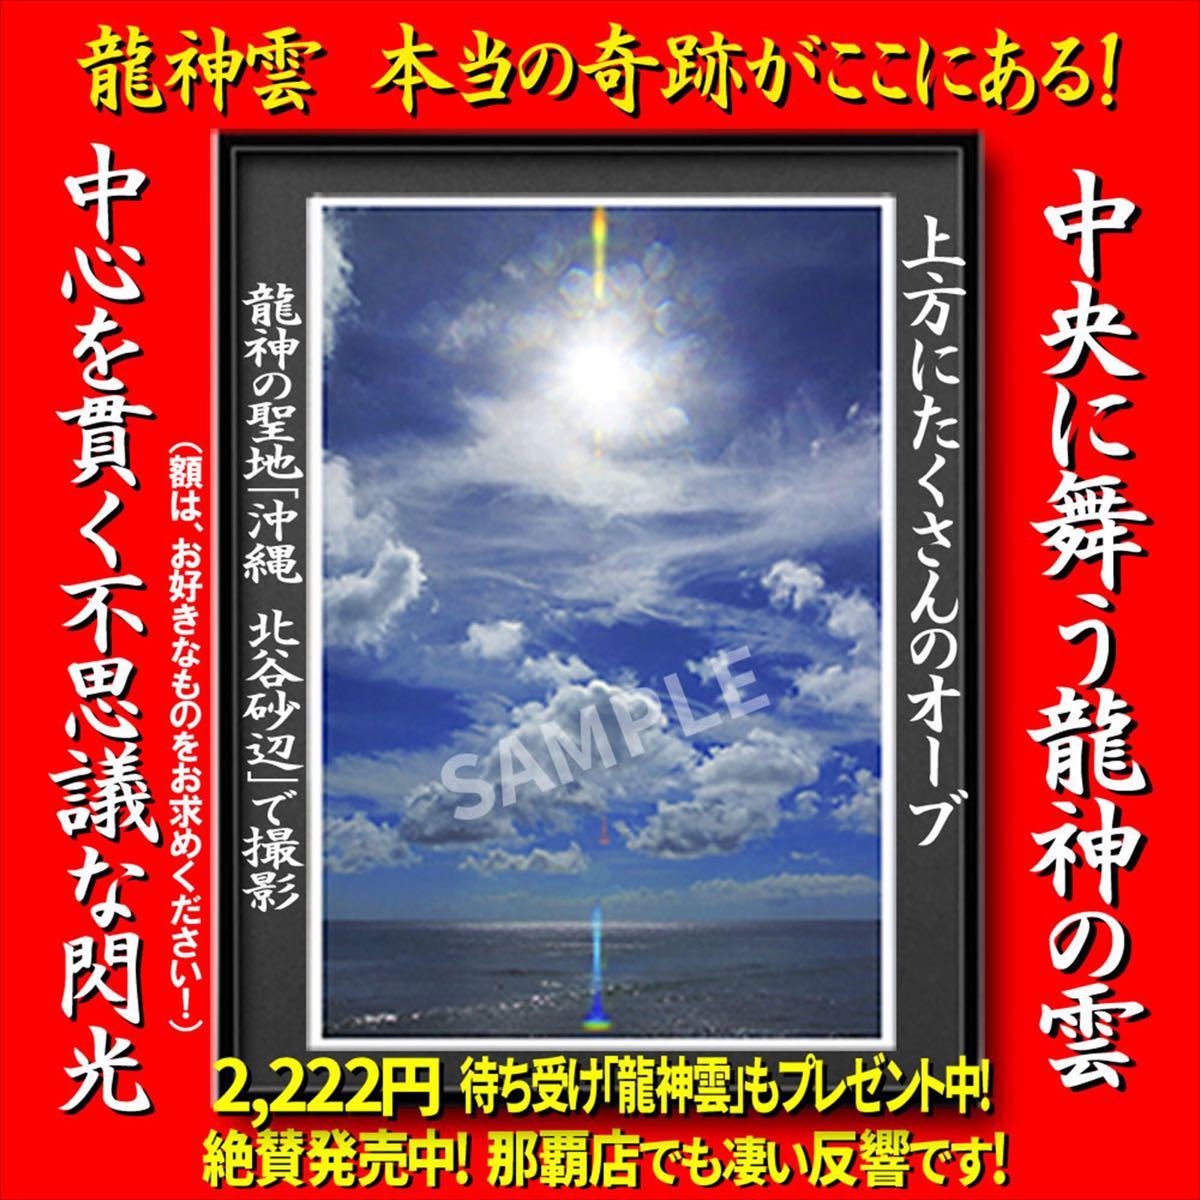 Paypayフリマ 本当の奇跡がここにある 琉球龍神雲 ａ４サイズ スマホ待ち受け オマケ付き